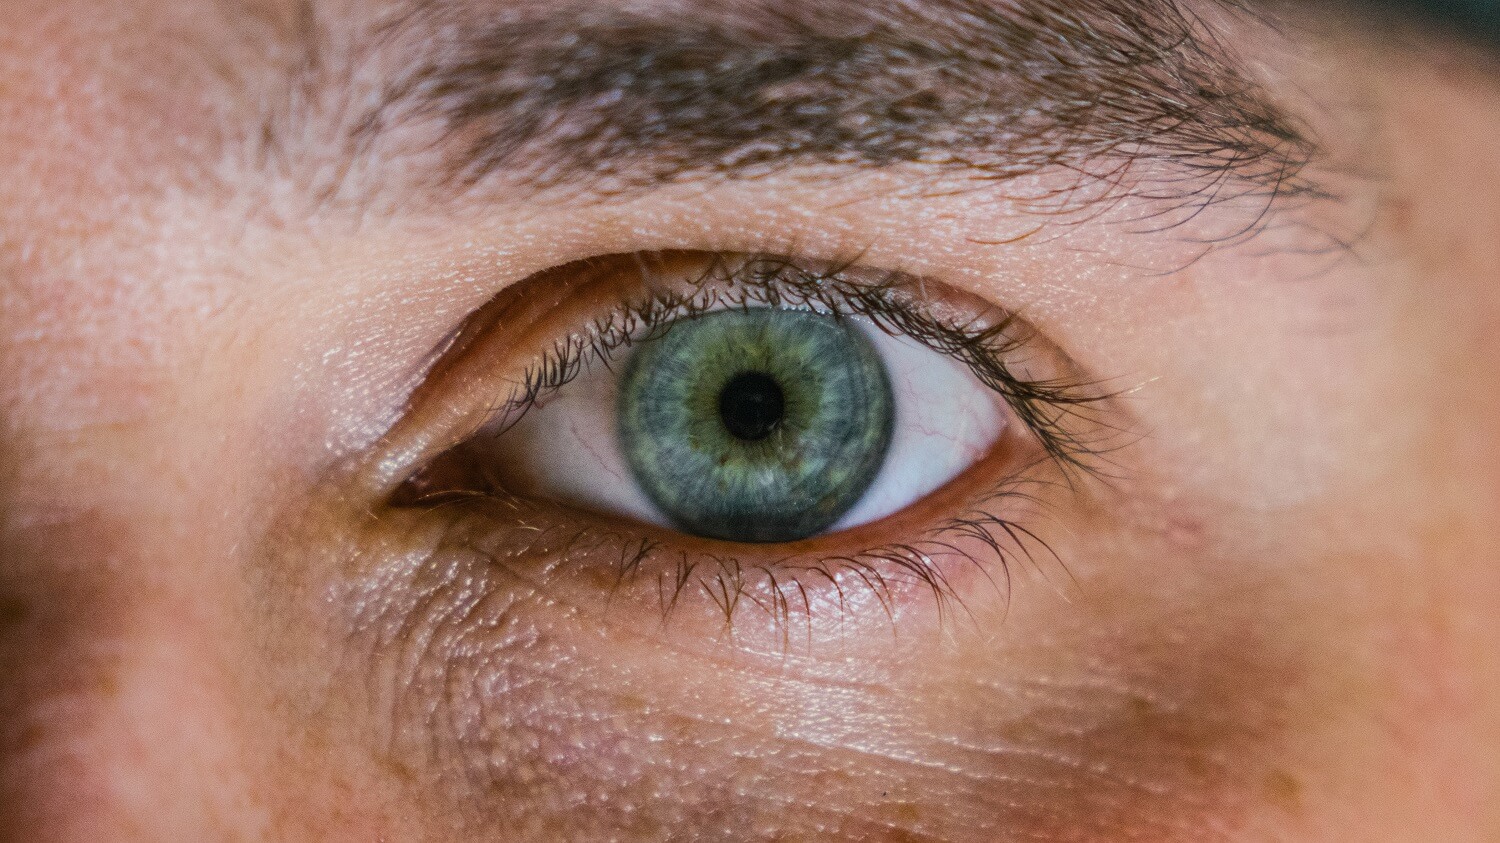 Ein extreme close up fokussiert ein menschliches Auge.